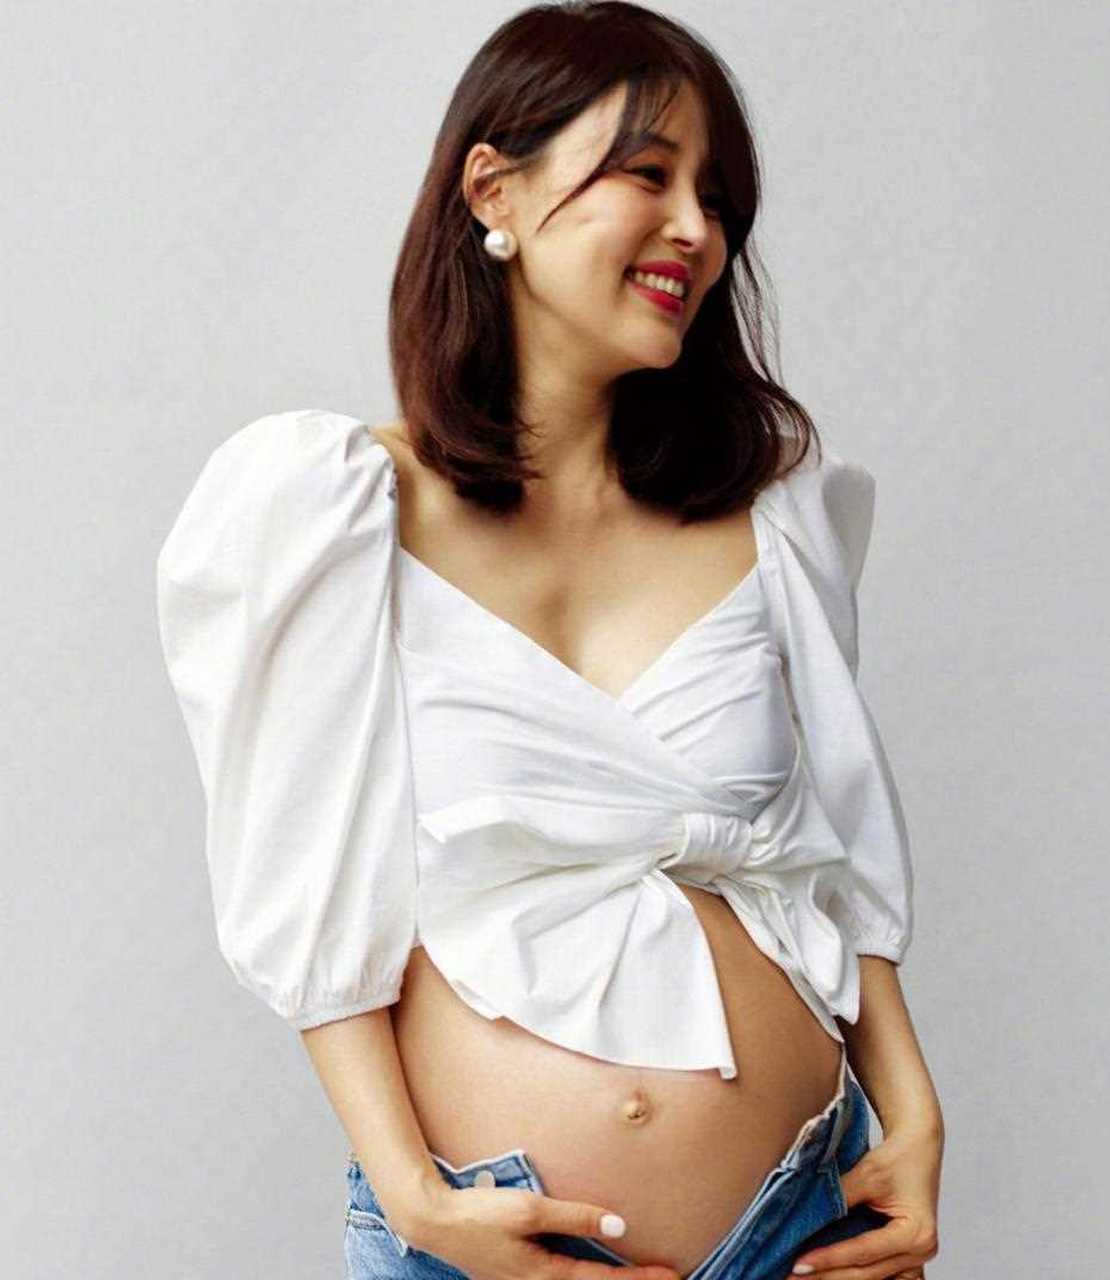 37岁韩智慧孕肚待产照嫩如少女!近日,据韩媒报道,韩国女星韩智慧于6